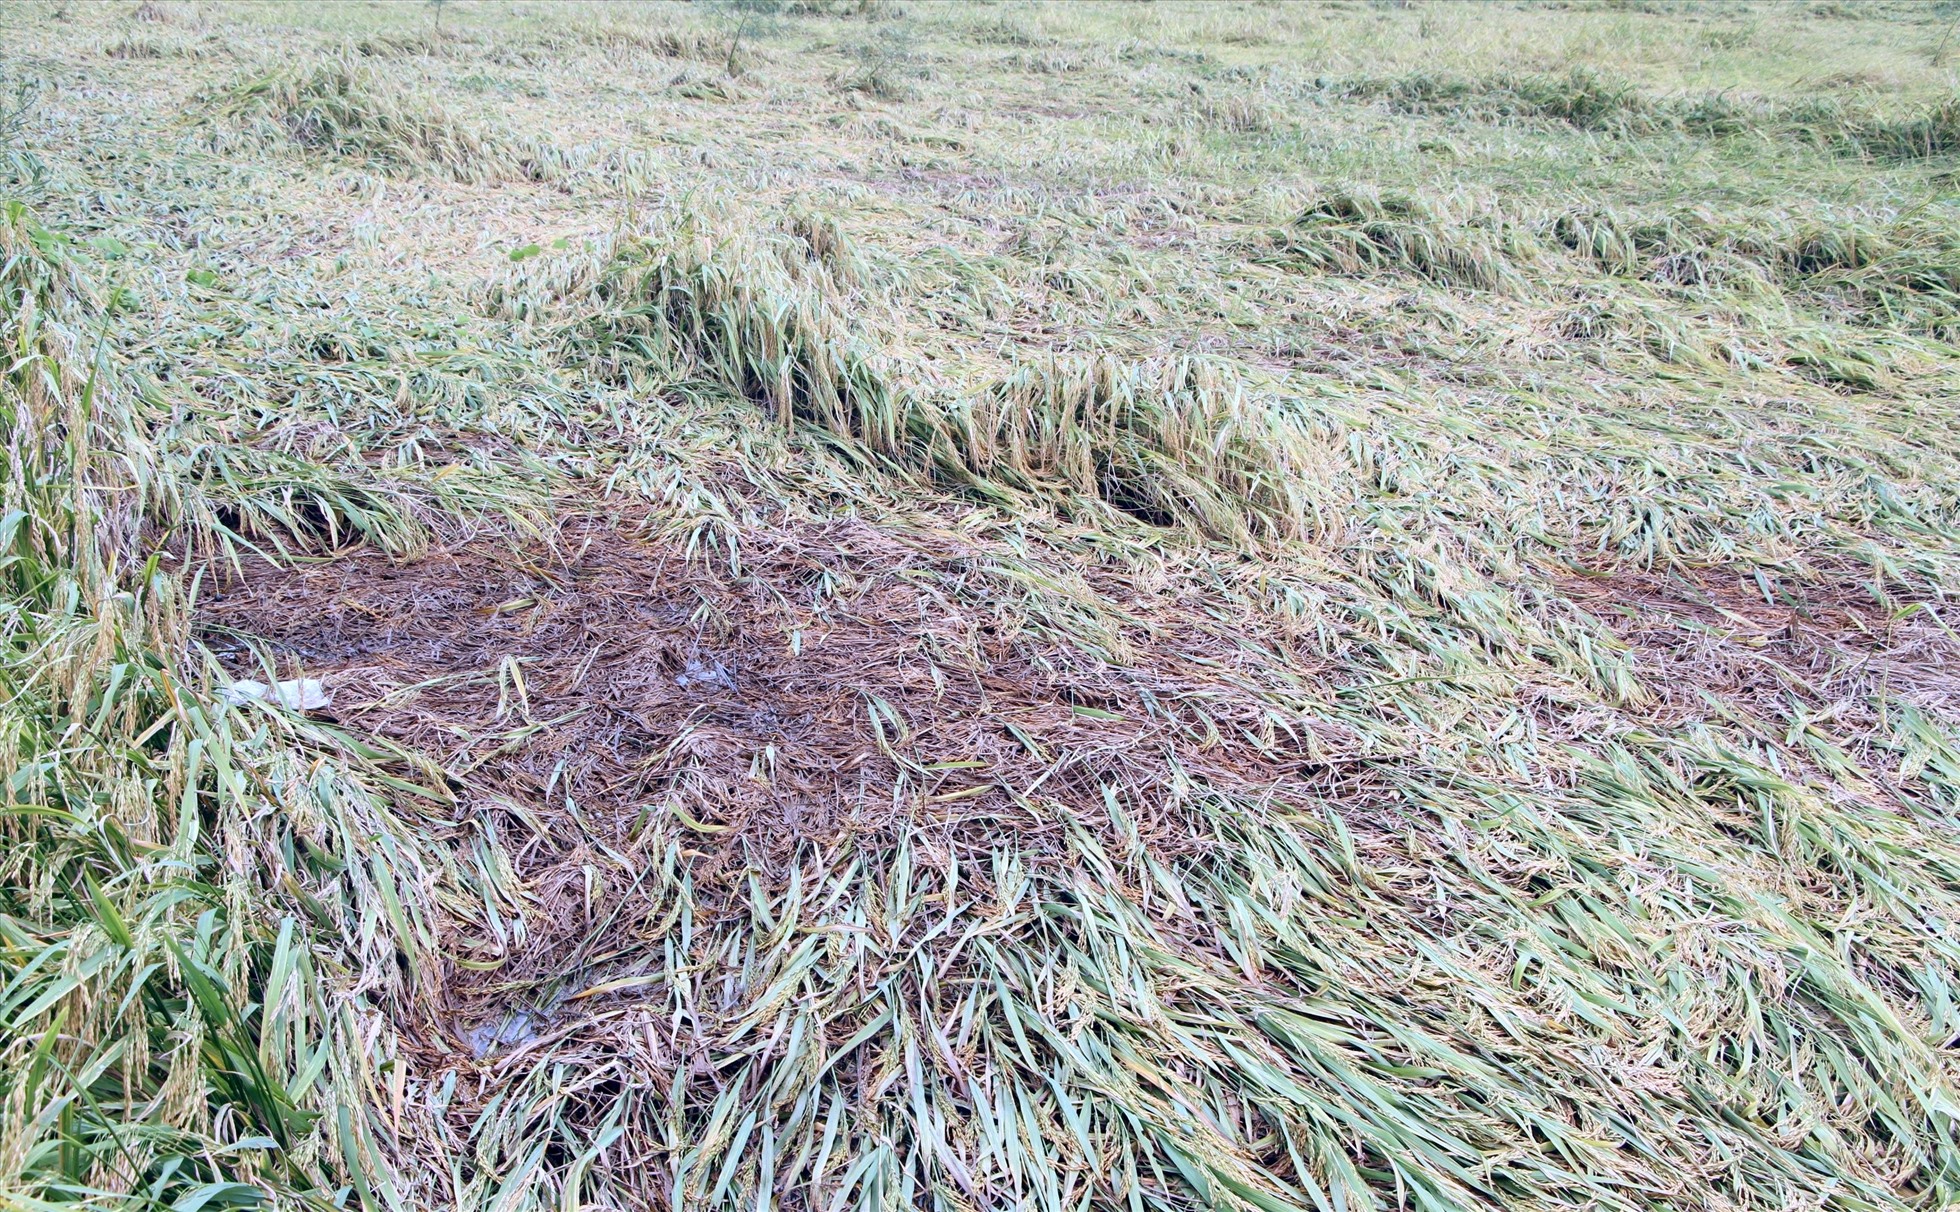 Nhiều diện tích lúa tại tỉnh Bạc Liêu ảnh hưởng thời tiết sập khi đến ngày thhuh hoạch, trong khi các chủ máy gặt khó tìm mua dầu đẩy nông dân vào thế khó. Ảnh: Nhật Hồ